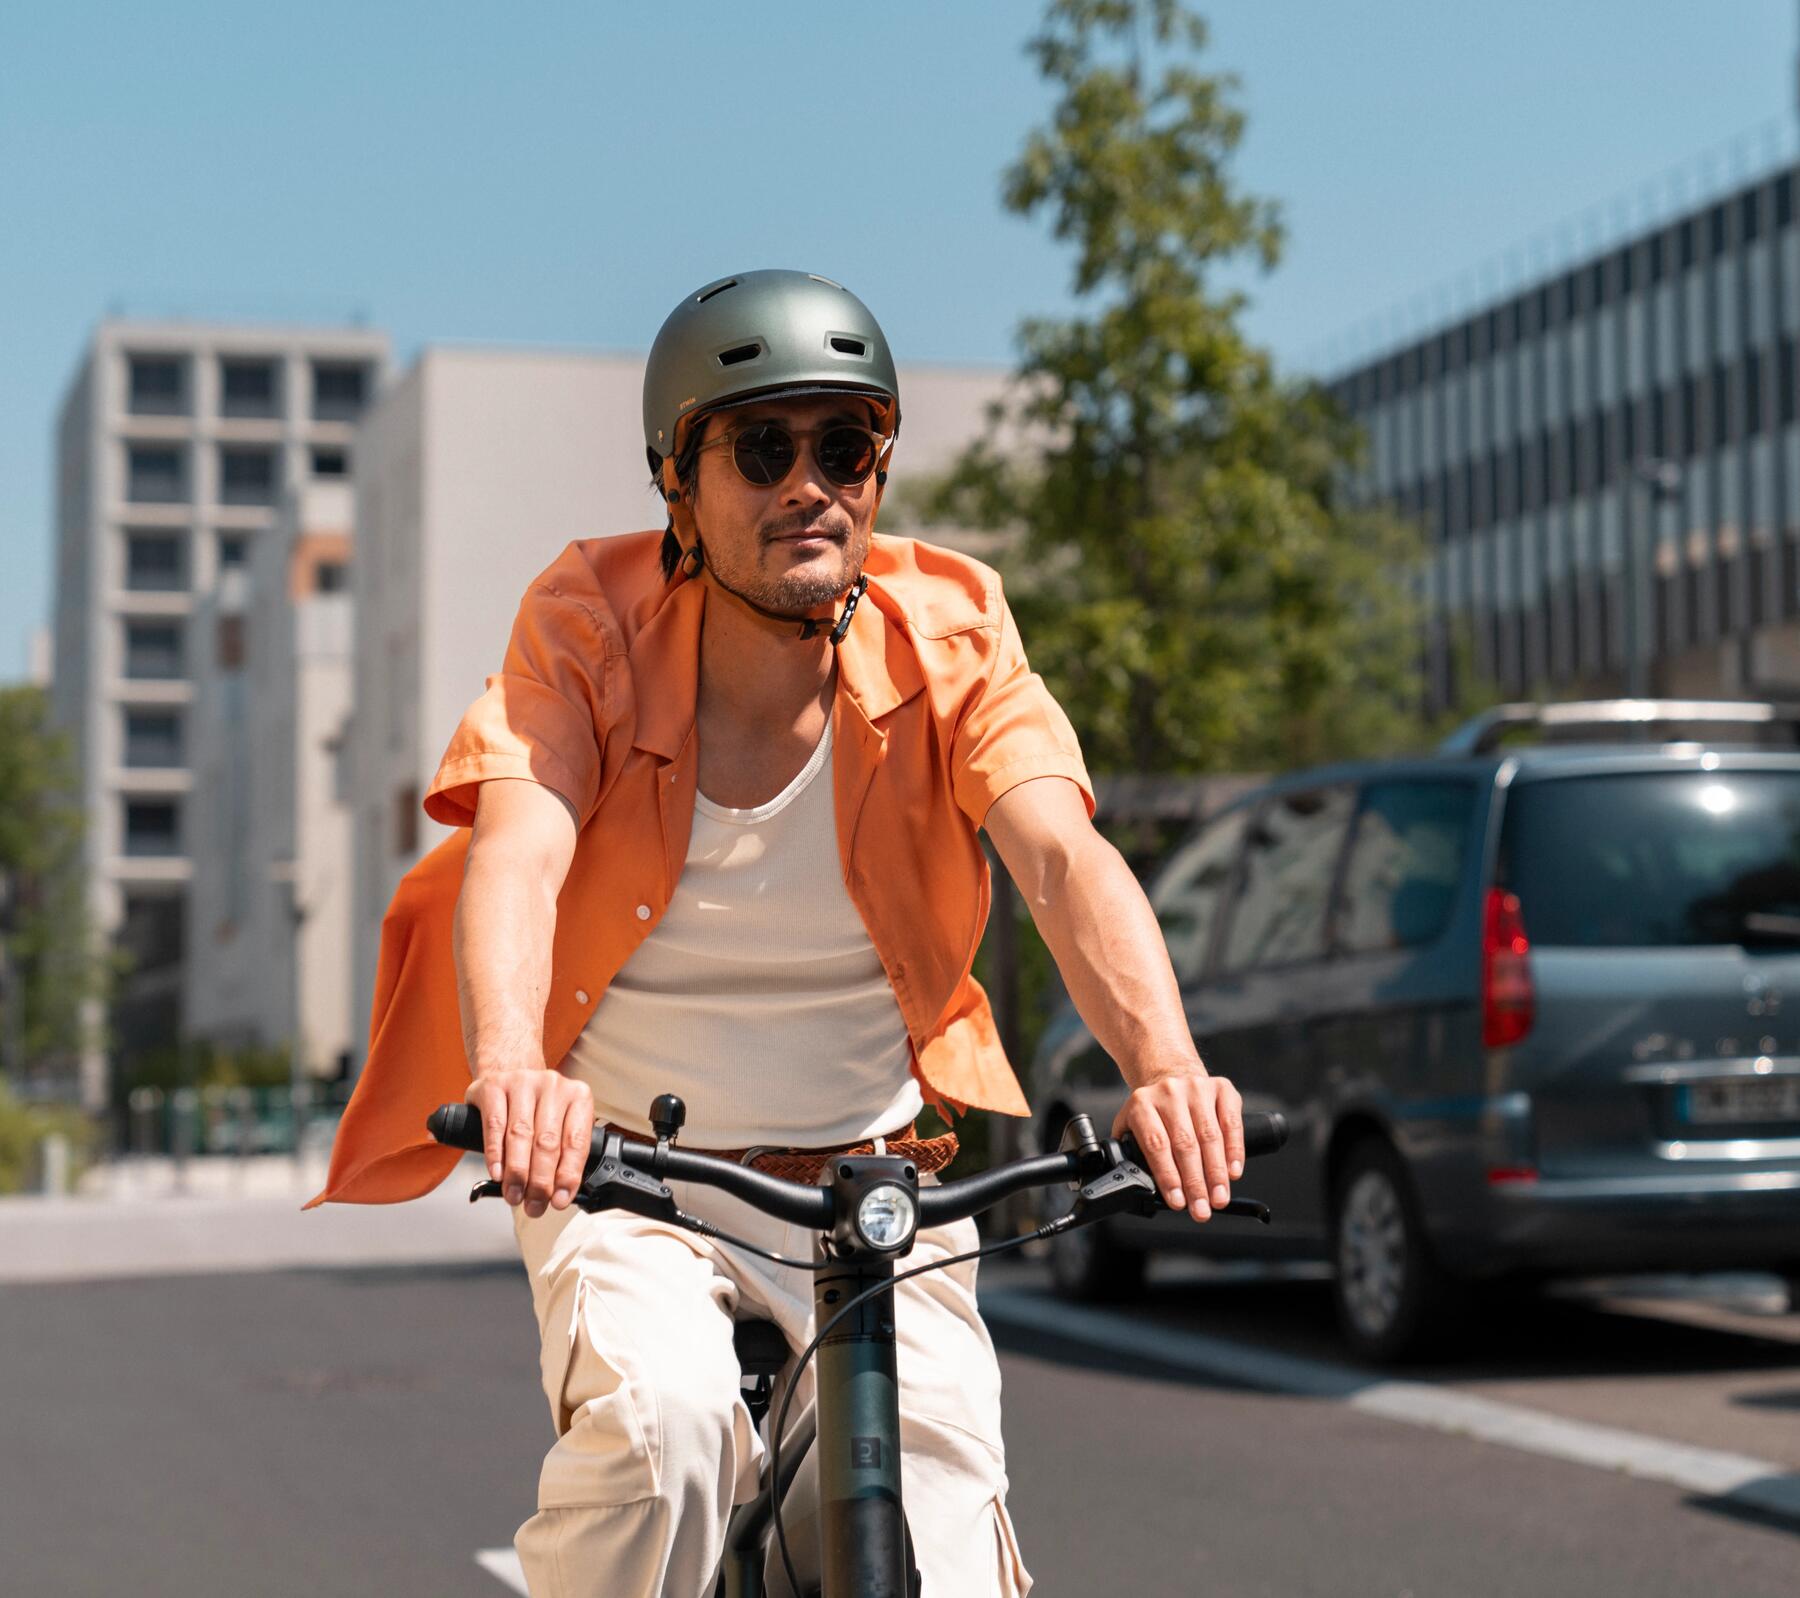 Bici a pedalata assistita automatica: quali sono i vantaggi?